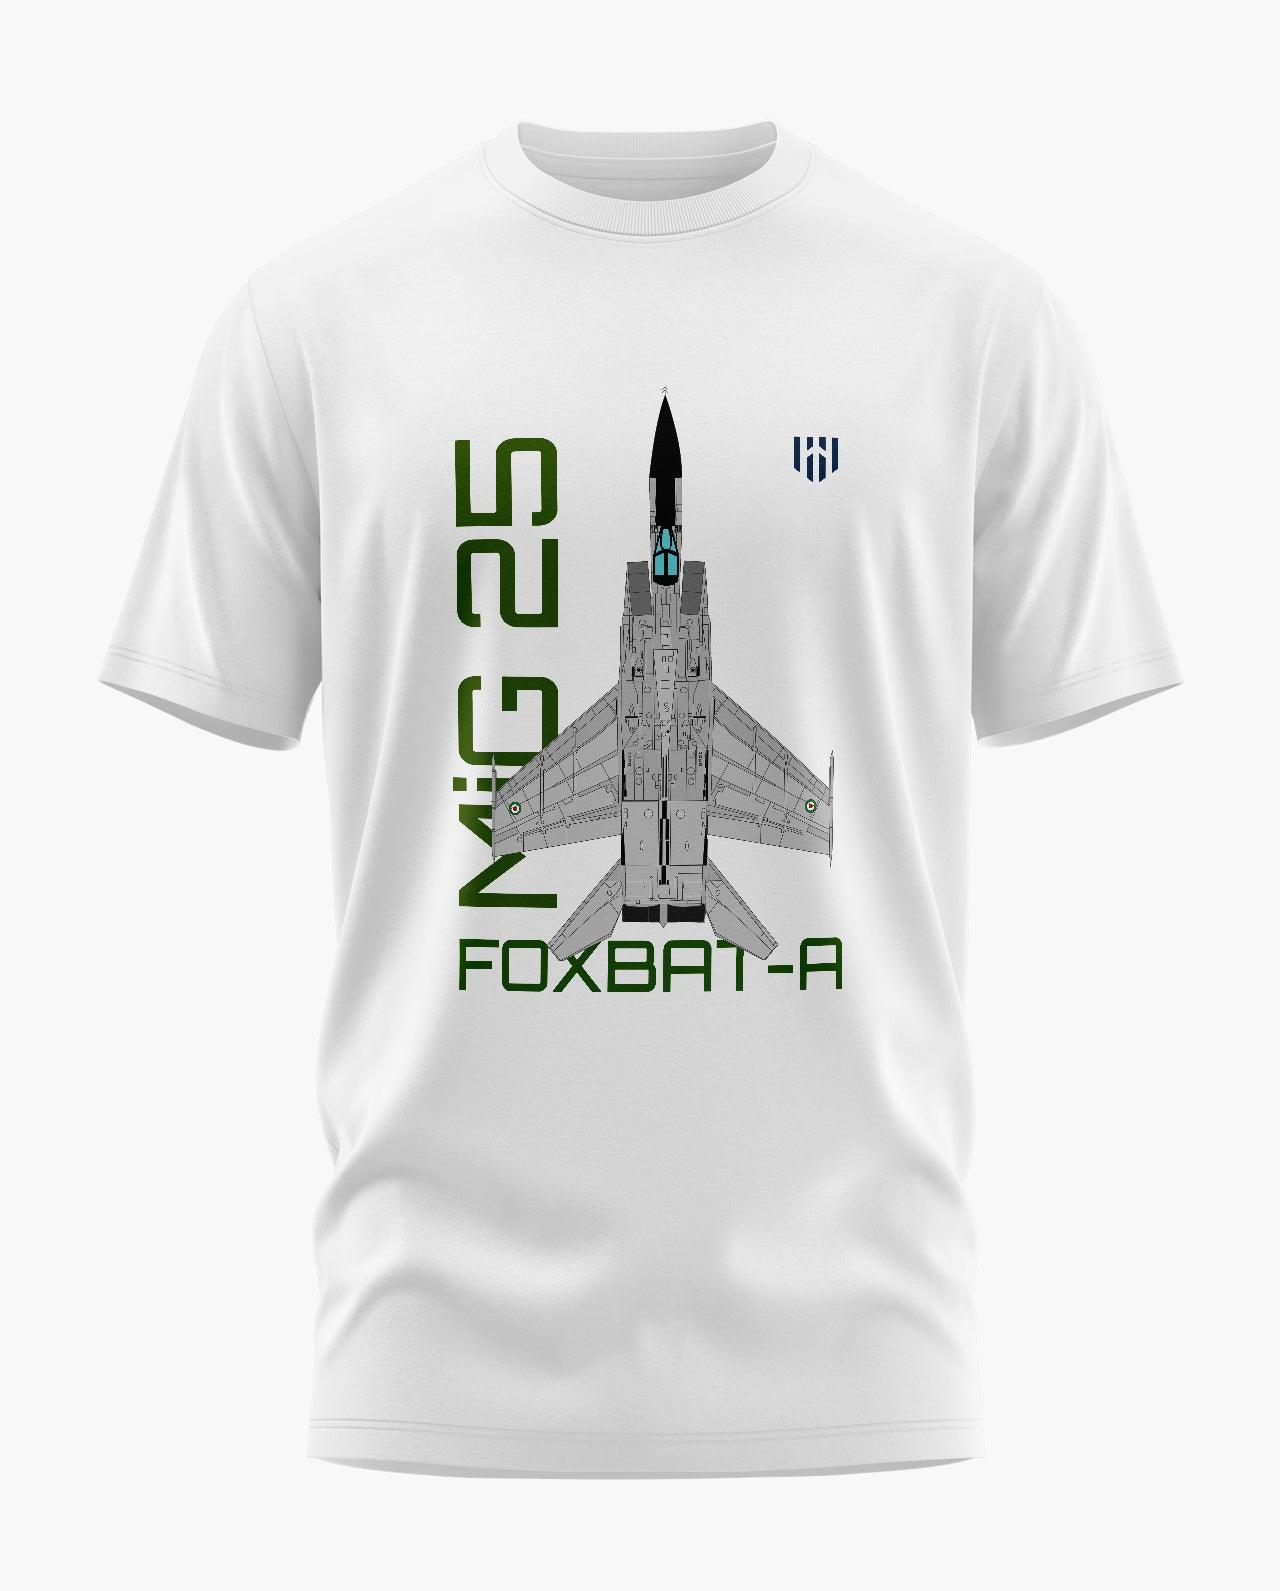 MiG Foxbat T-Shirt - Aero Armour